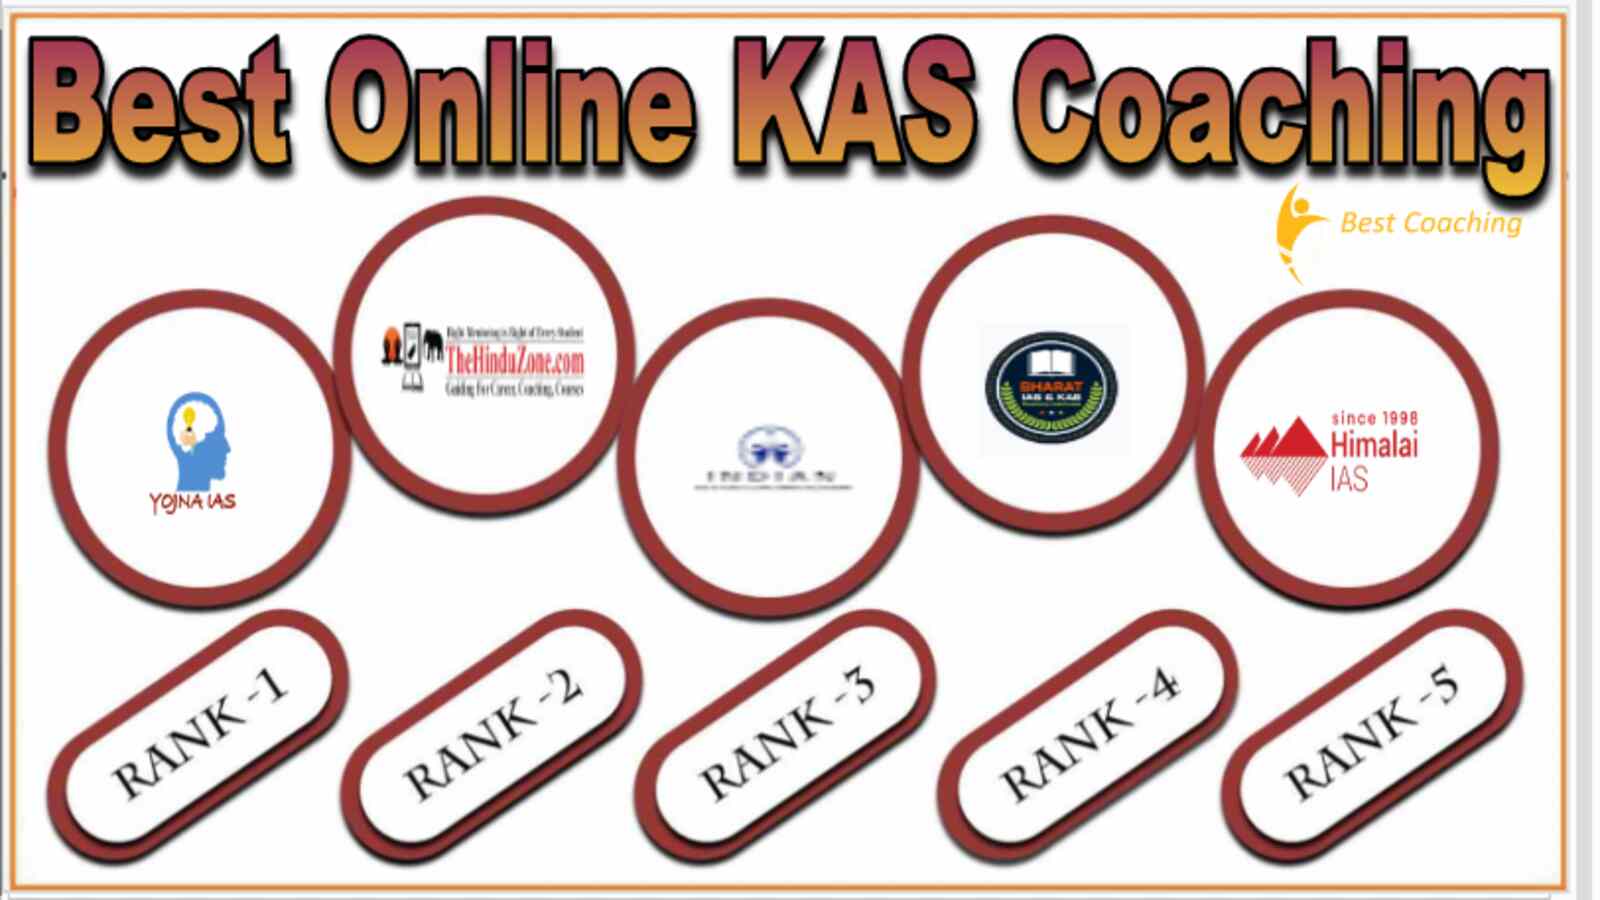 Best Online KAS Coaching